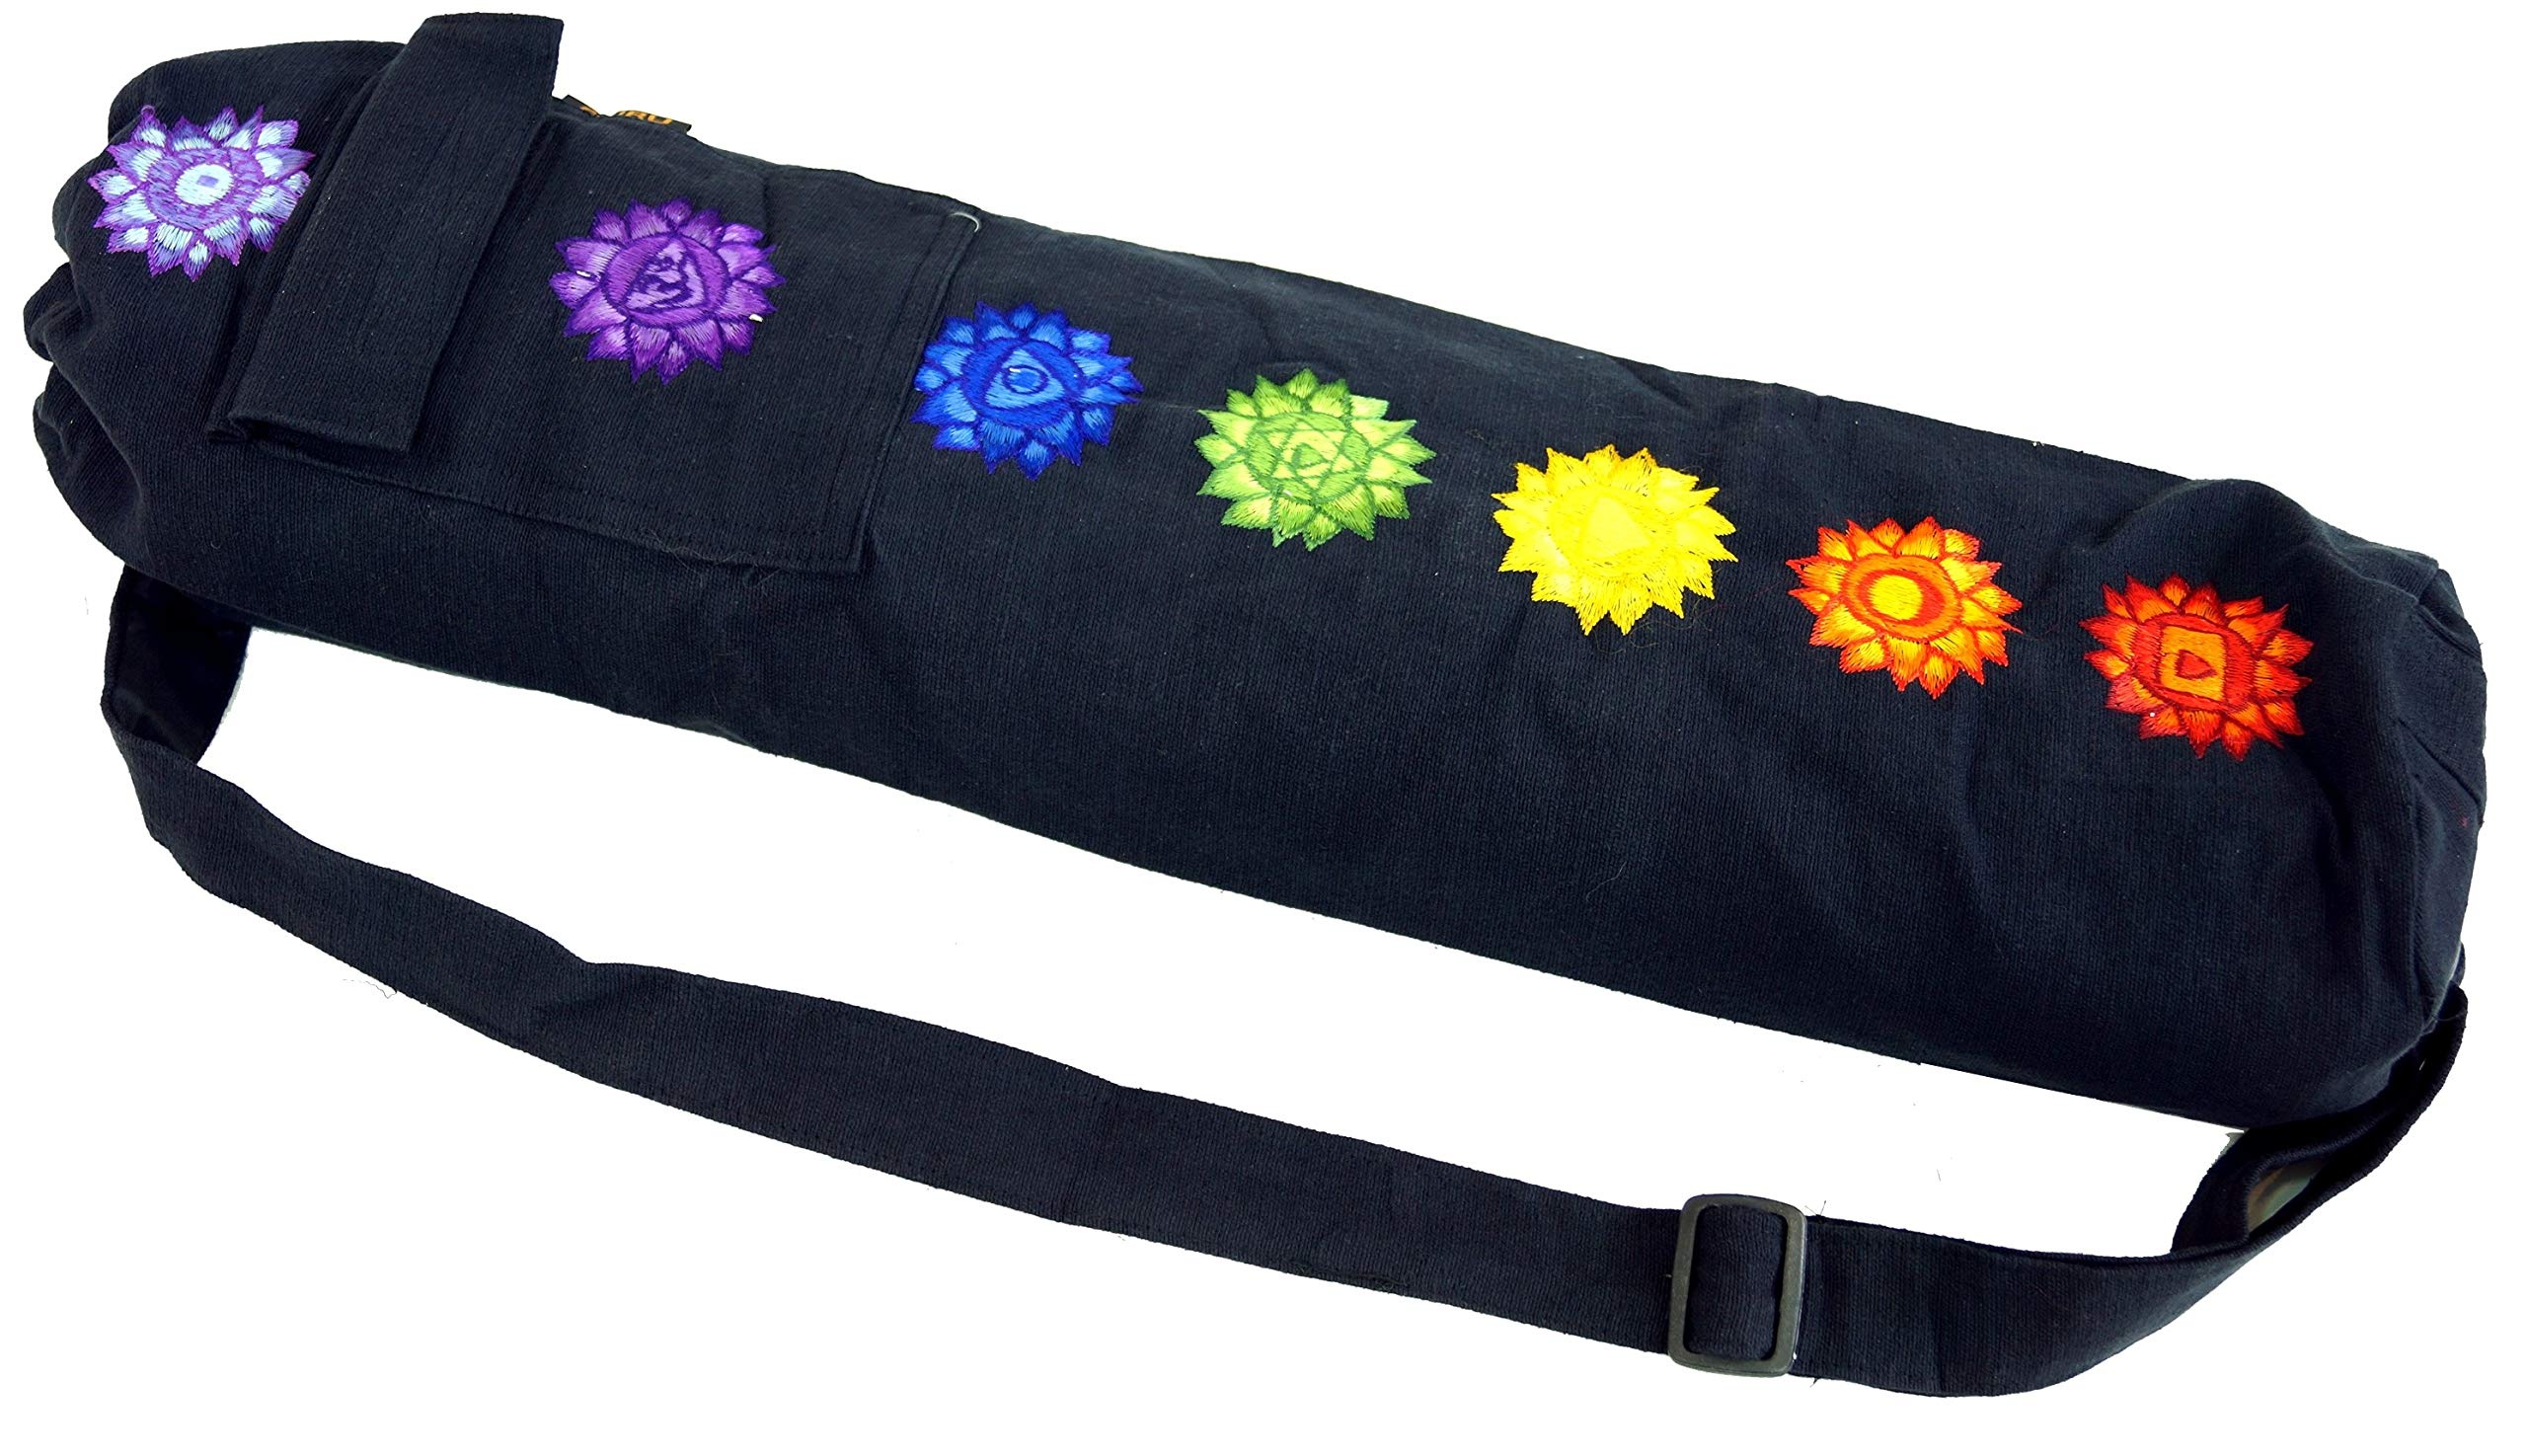 GURU SHOP Yogamatten-Tasche 7 Chakra - Schwarz, Herren/Damen, Baumwolle, Size:One Size, 65x15x15 cm, Taschen für Yogamatten - Einheitsgröße